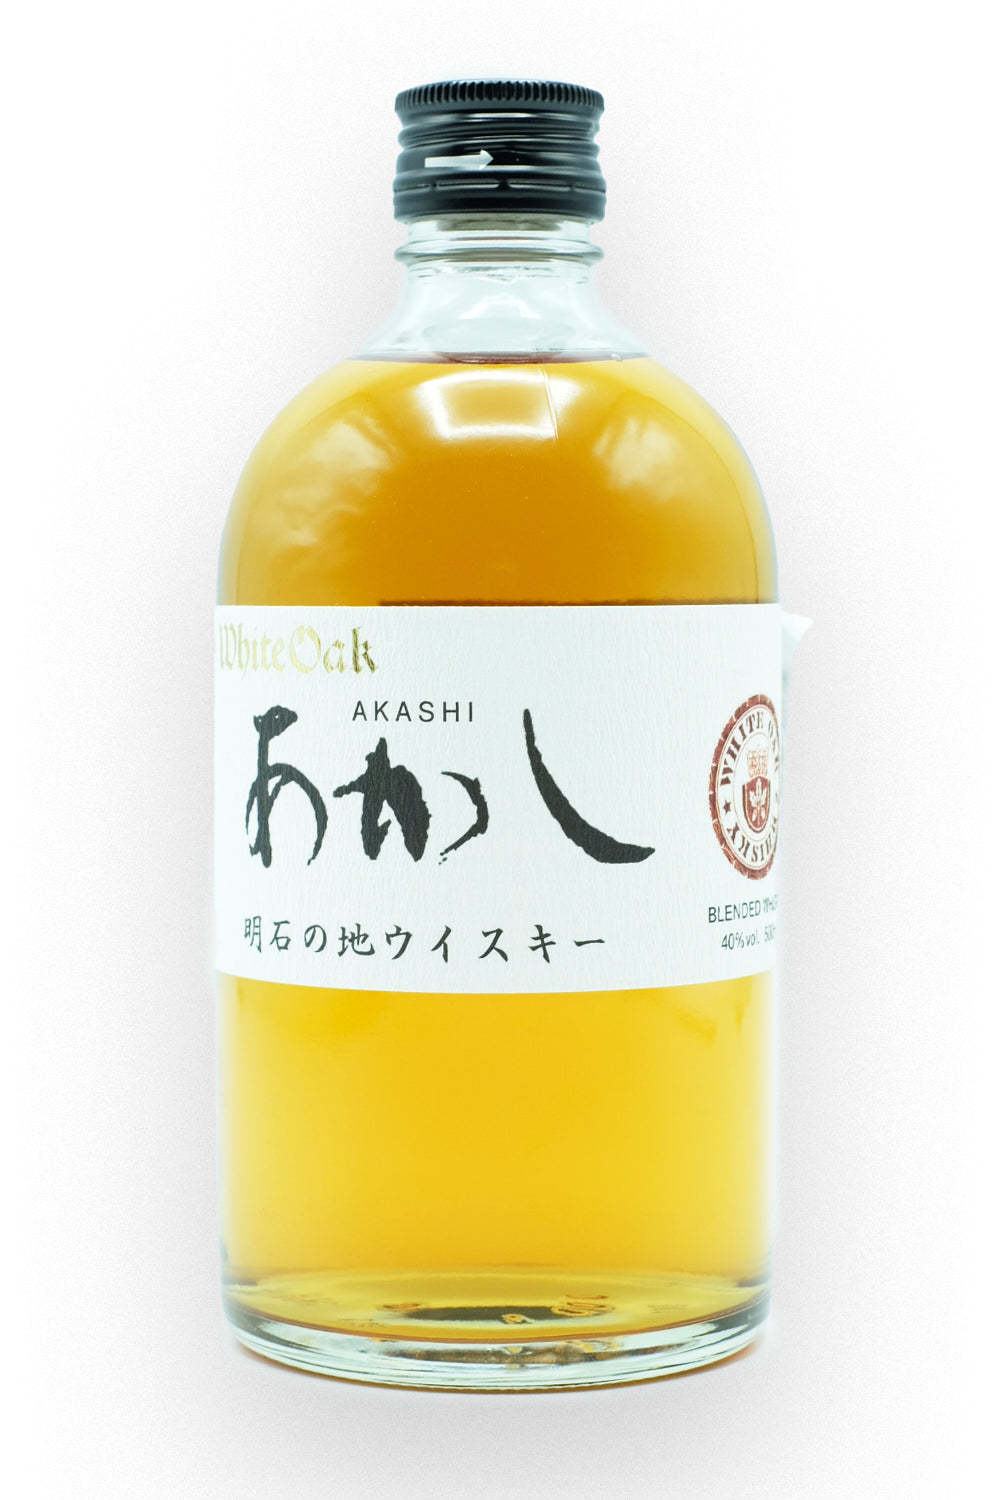 White Oak Akashi Japanese Whisky